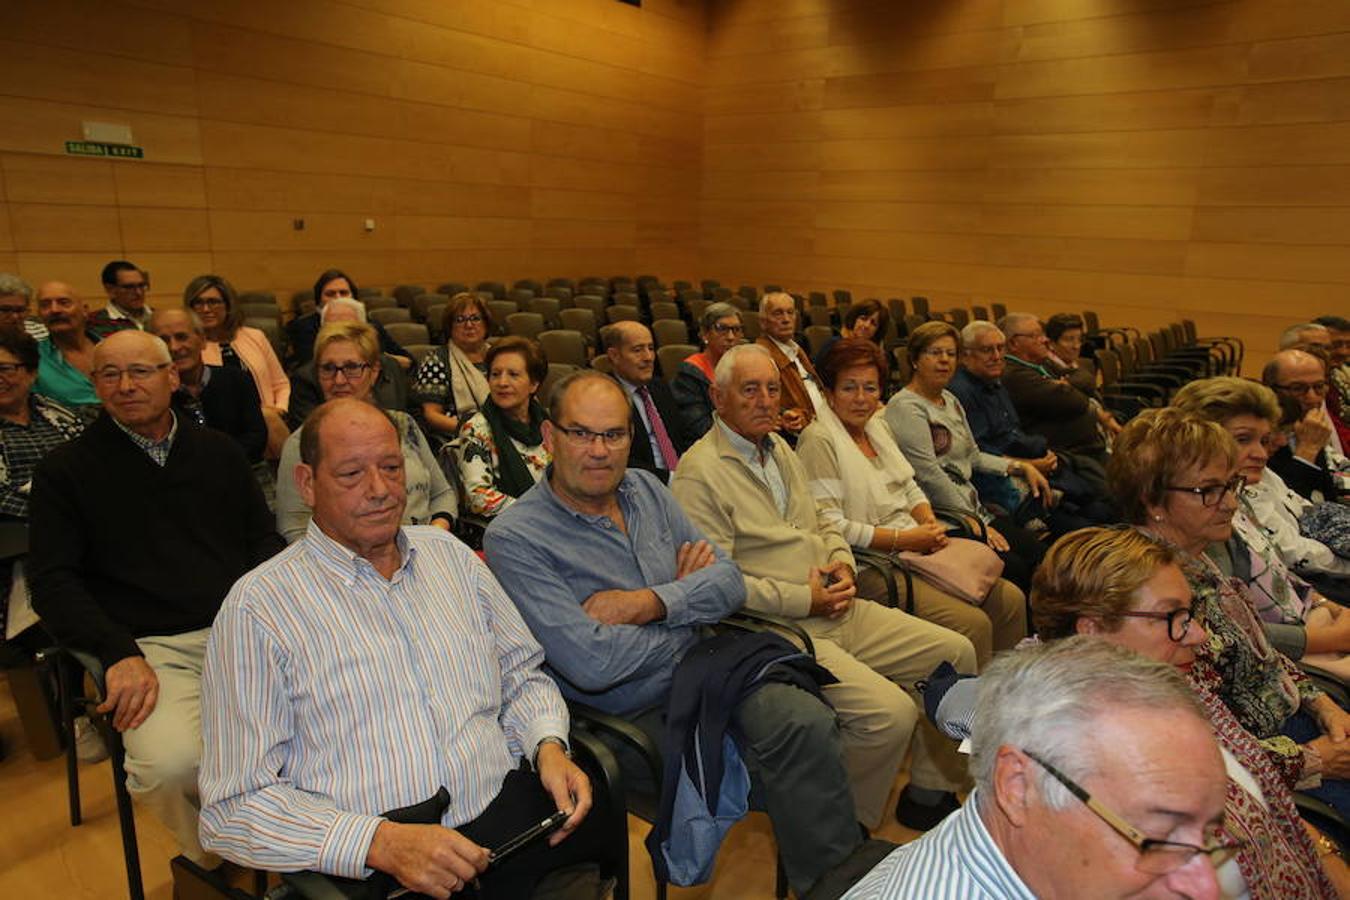 La alcaldesa de Logroño, Cuca Gamarra, y la consejera de Presidencia, Relaciones Institucionales y Acción Exterior, Begoña Martínez Arregui, han participado en Riojafórum en el acto institucional con motivo del 40 aniversario de la Asociación de Pensionistas y Jubilados de La Rioja.